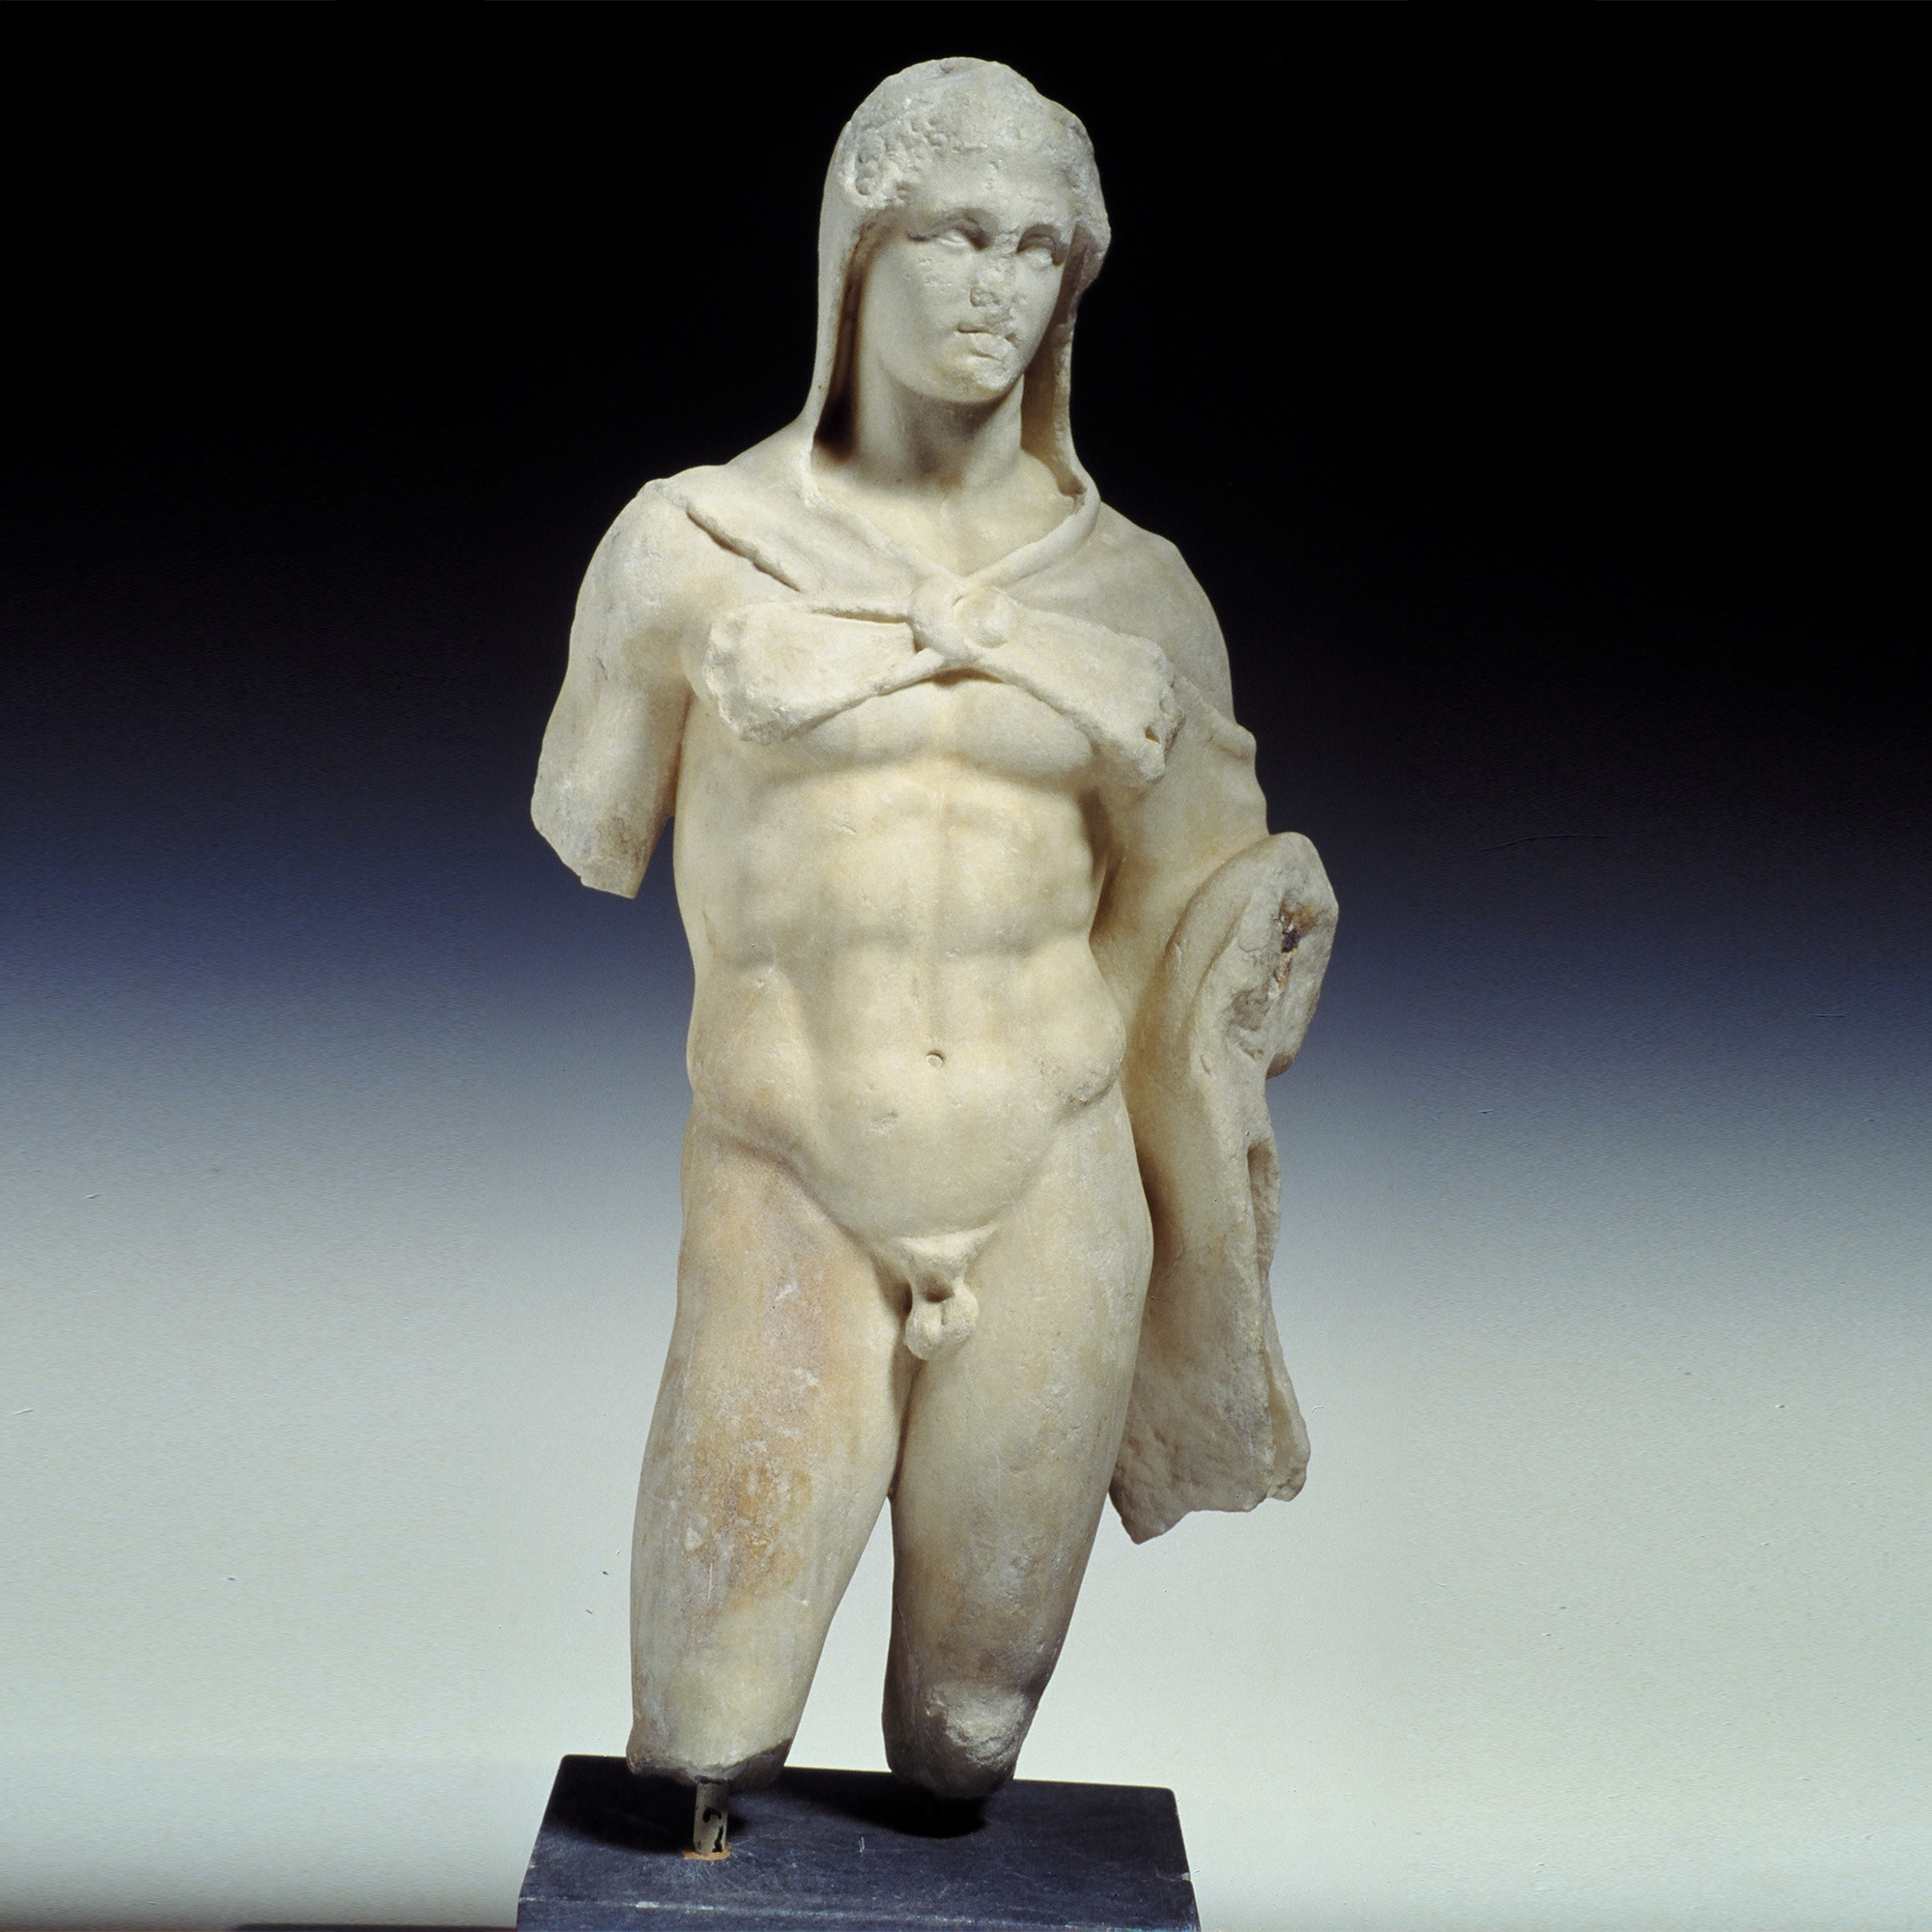 Το μικρό άγαλμα, (0,54 μ) του Ηρακλή (τέλος 4ου αι. πΧ.), το οποίο εκτίθεται στο Εθνικό Αρχαιολογικό Μουσείο (αίθουσα του Βωμού), ανακαλύφθηκε το 1885, απέναντι από το σημείο που βρέθηκε η κεφαλή του Ερμή.